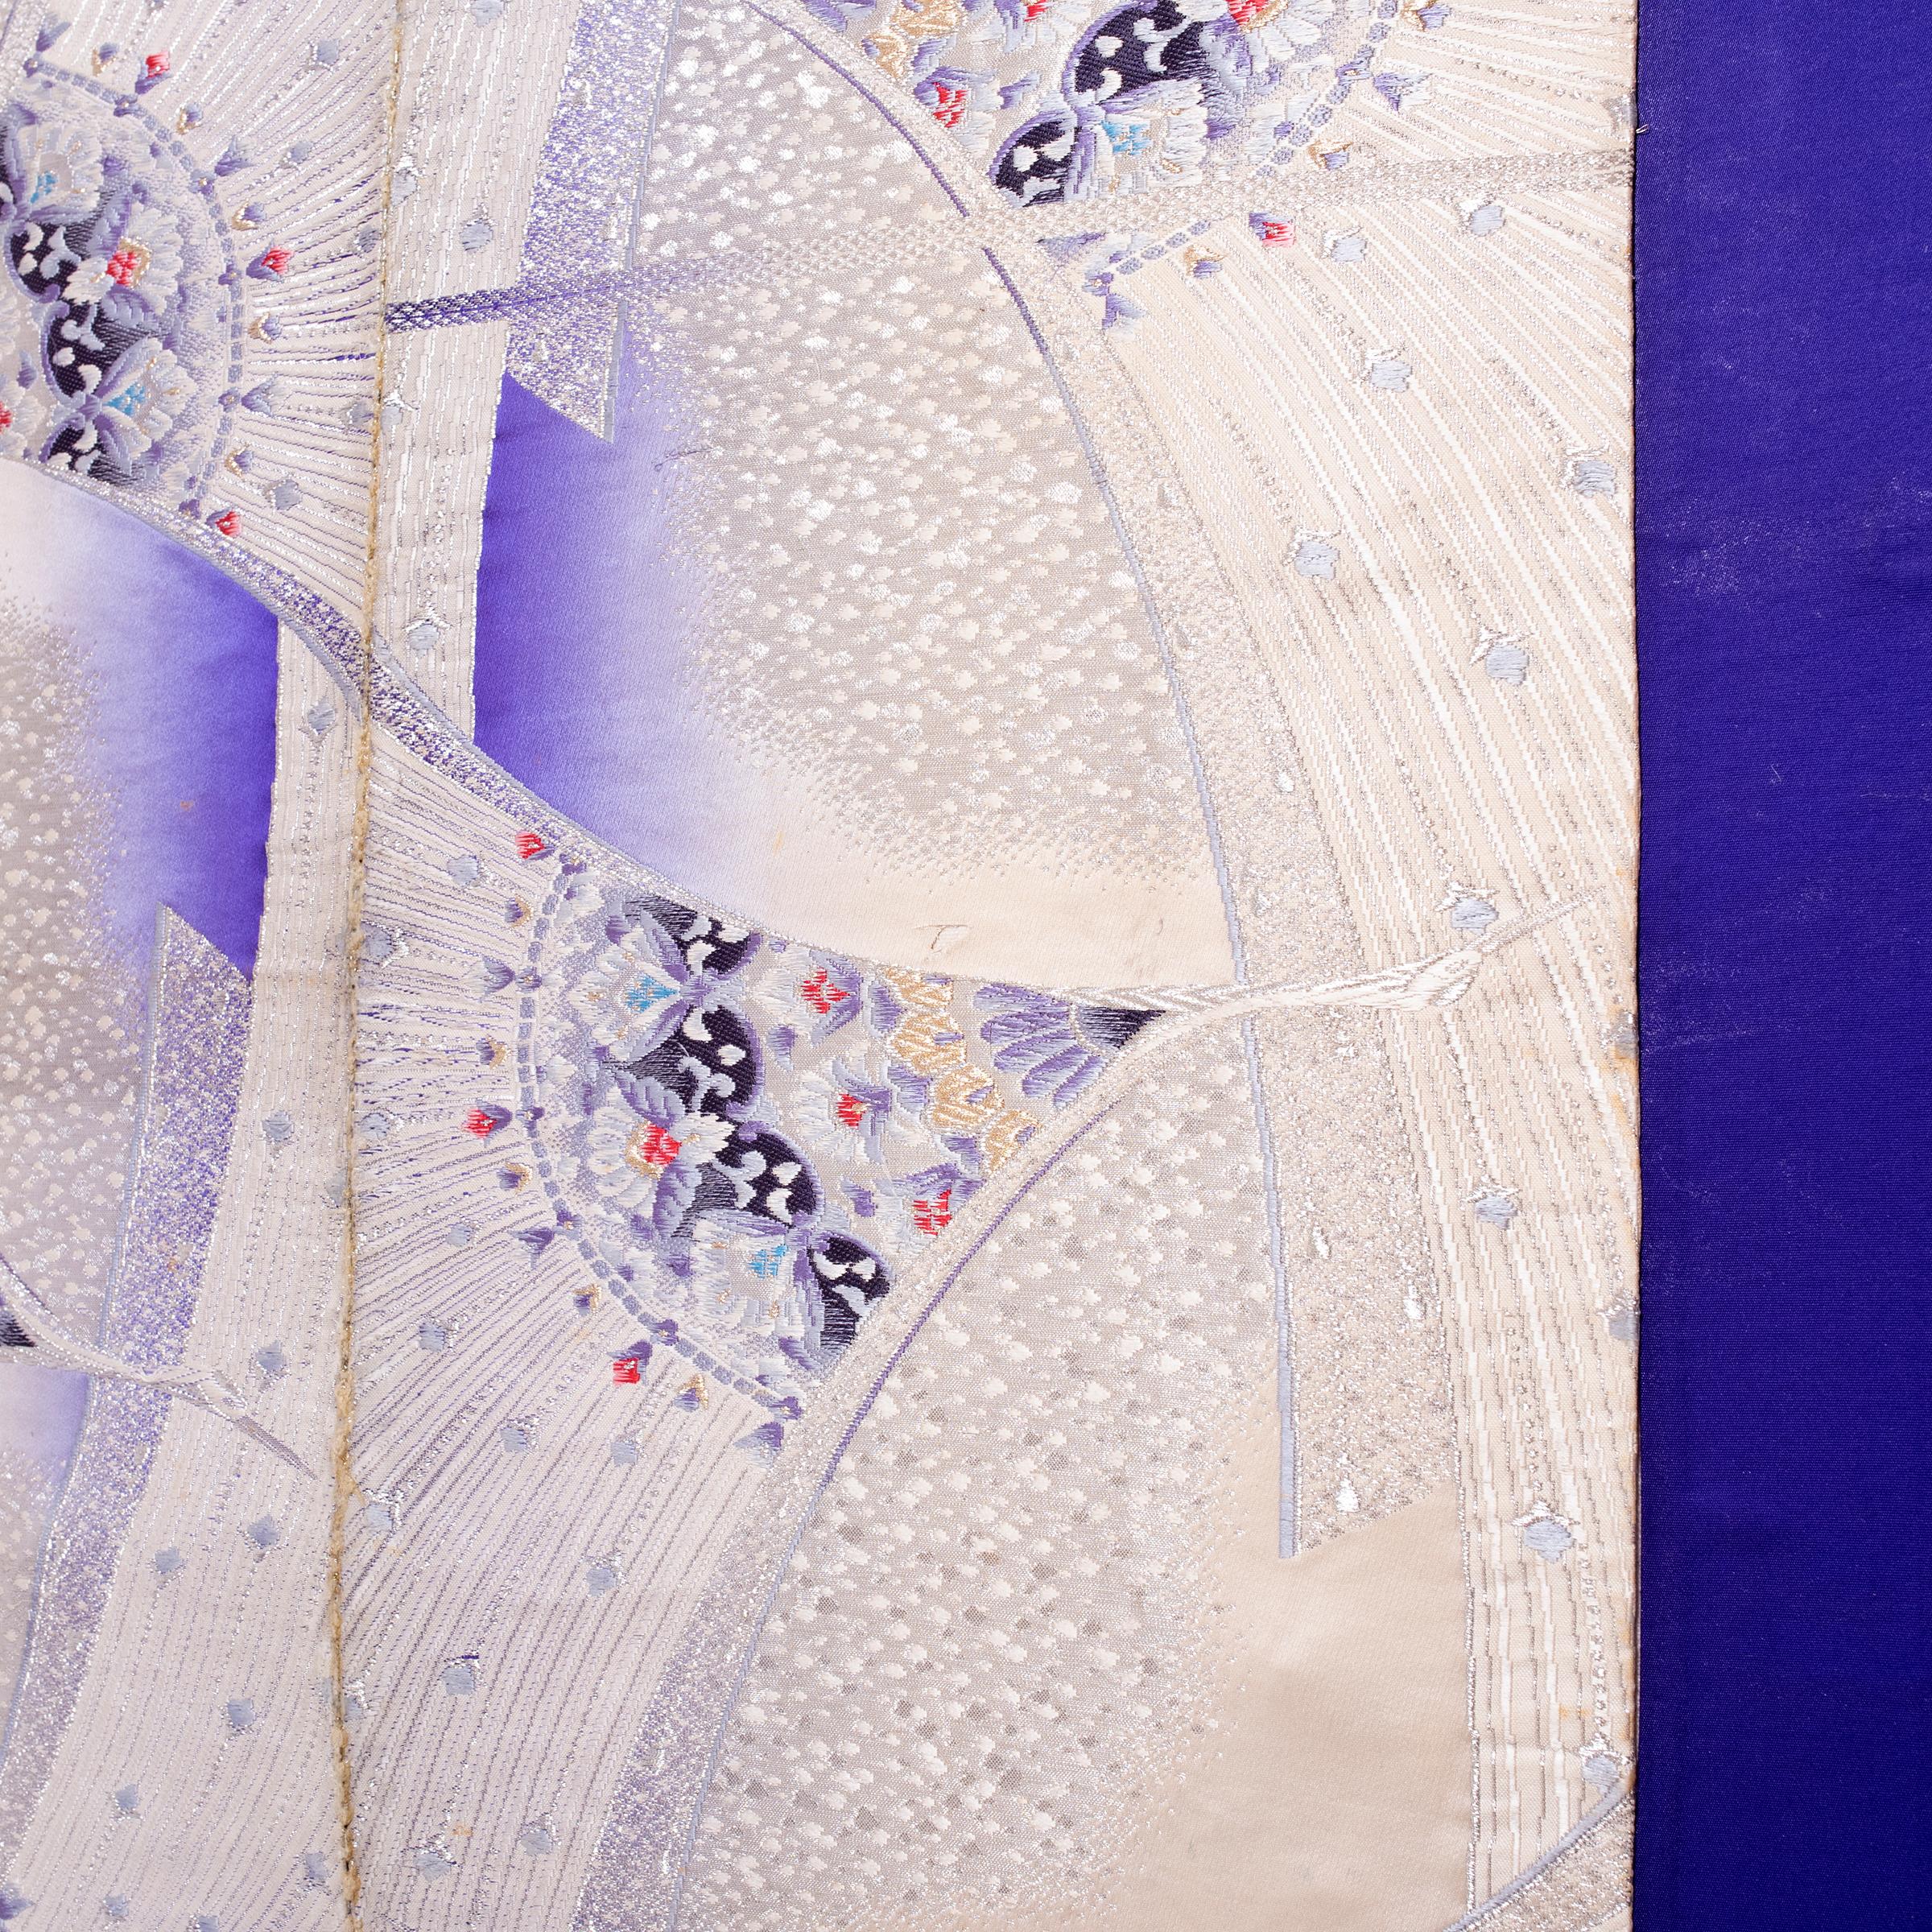 L'artiste Michael Thompson, basé à Chicago, crée des cerfs-volants uniques à partir de cadres en bambou fendu recouverts de mousseline tendue et d'un collage de documents éphémères asiatiques vintage - notamment des fragments de tissu, des rouleaux,